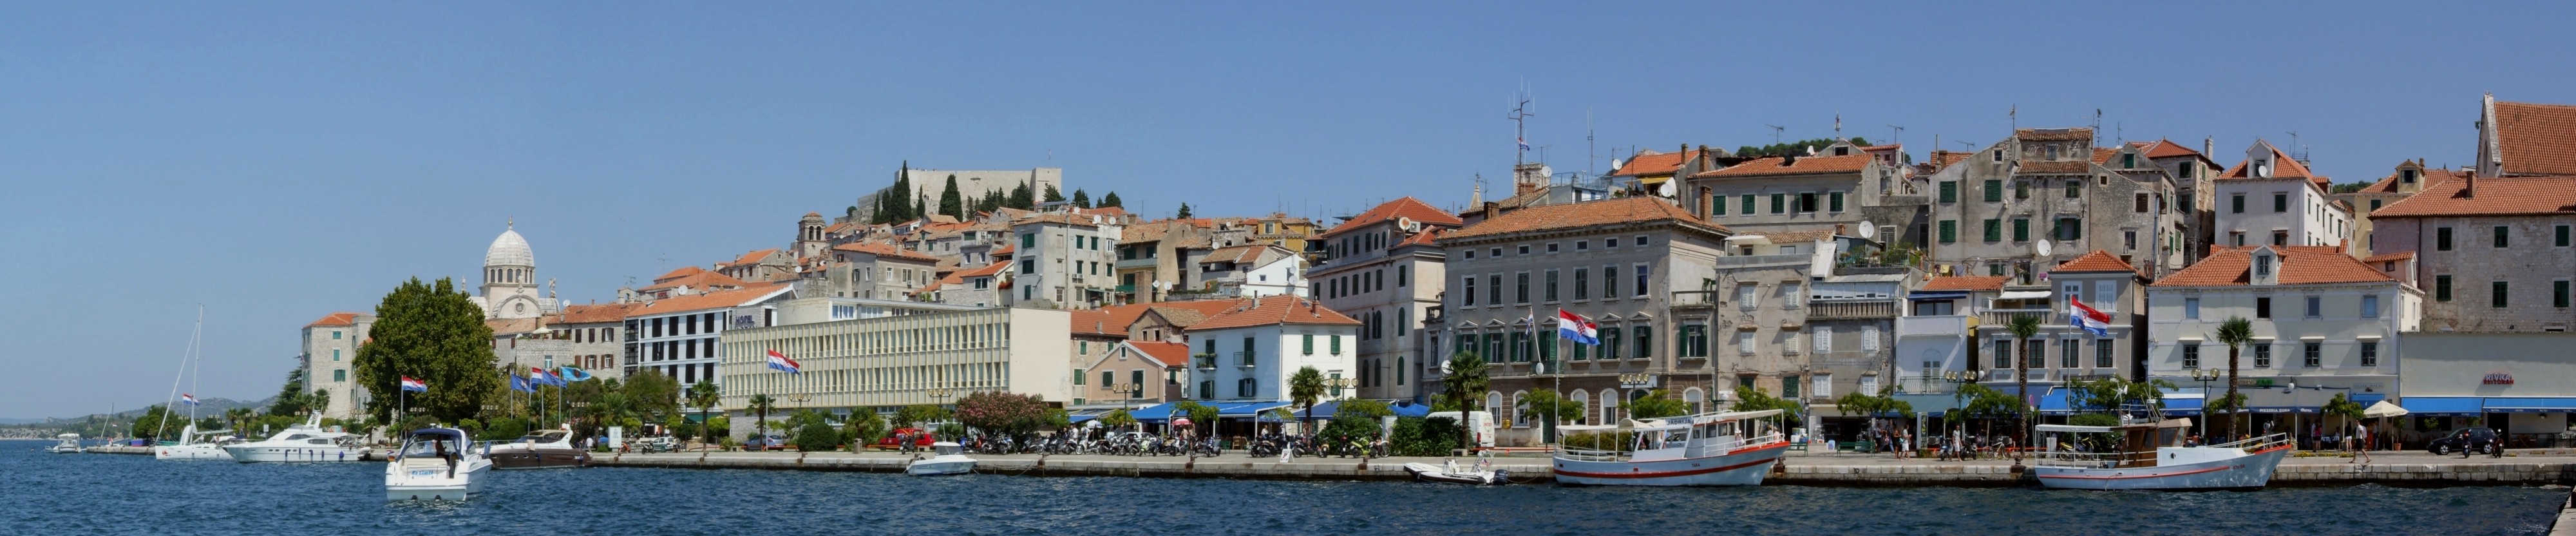 Šibenik harbour - panorama